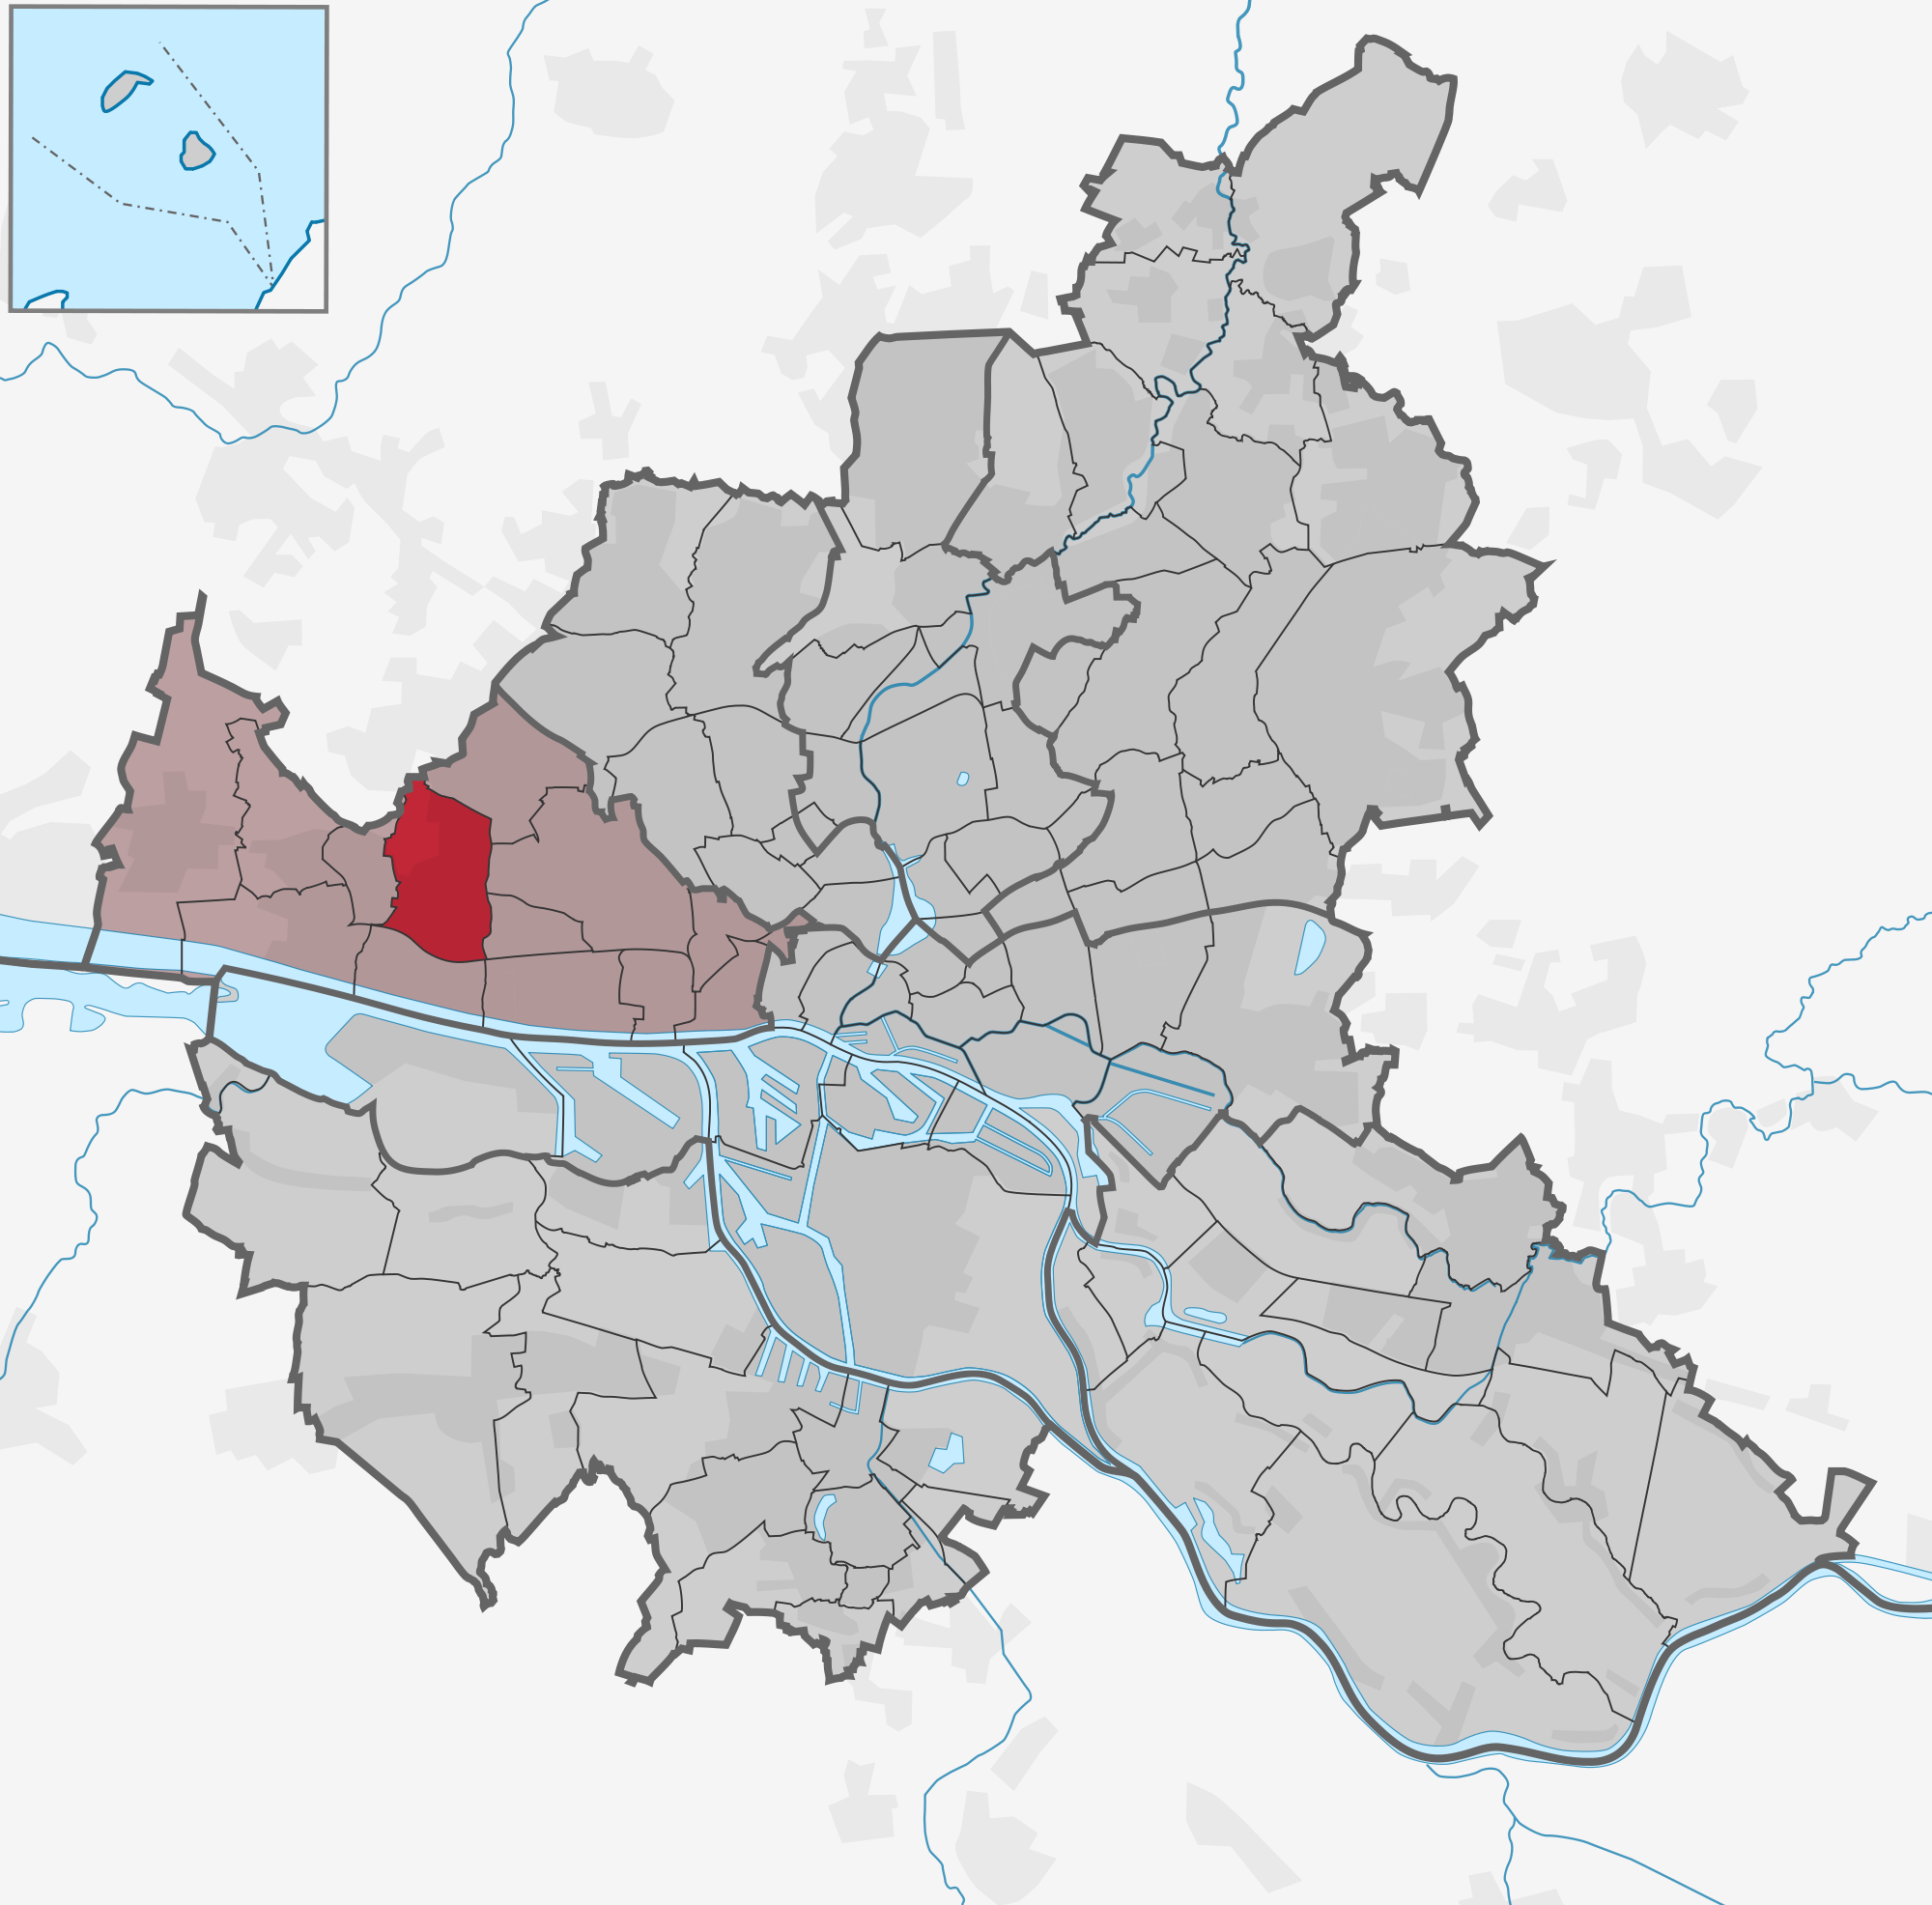 Stadtteil Osdorf (Bezirk Altona)